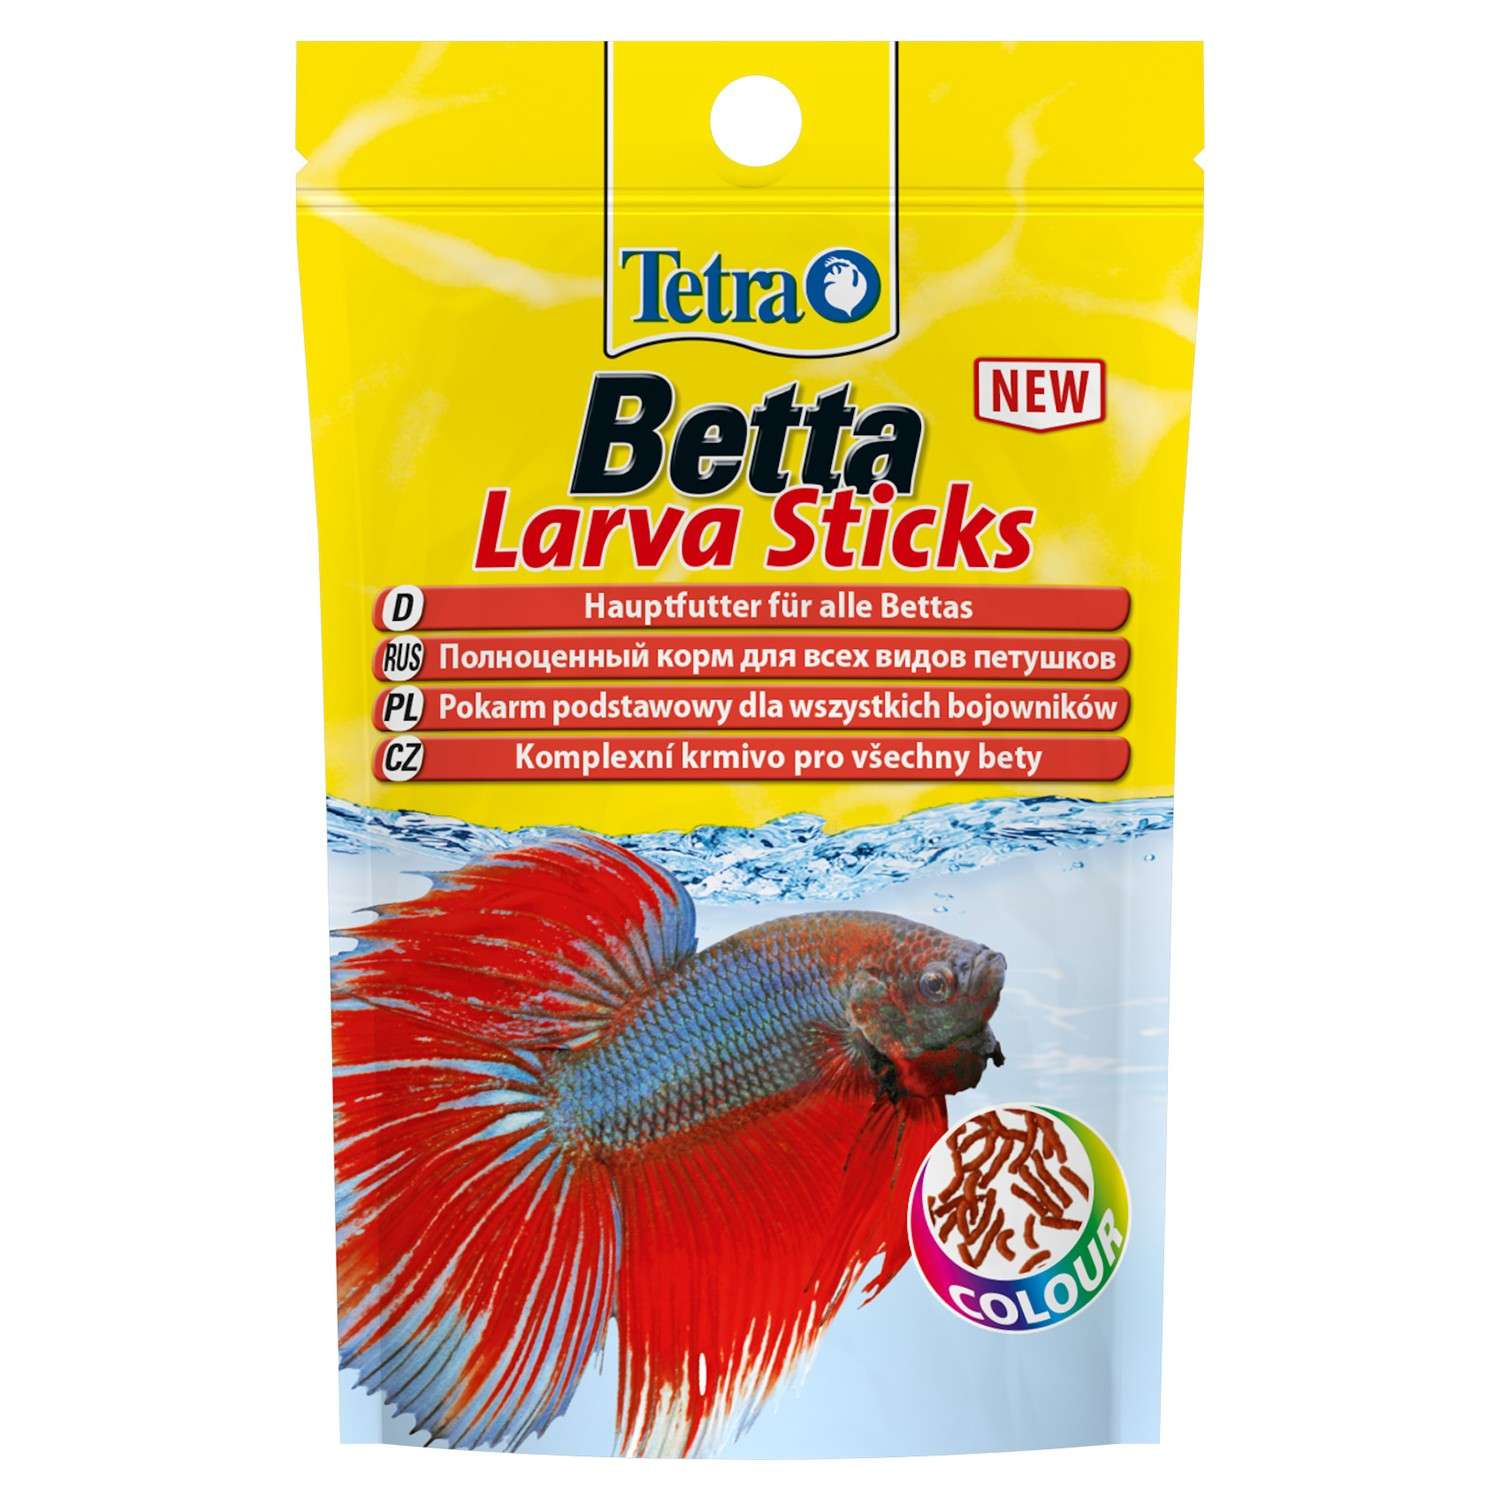 Корм для рыб Tetra 5г Betta LarvaSticks для петушков и других лабиринтовых рыб в форме мотыля - фото 1